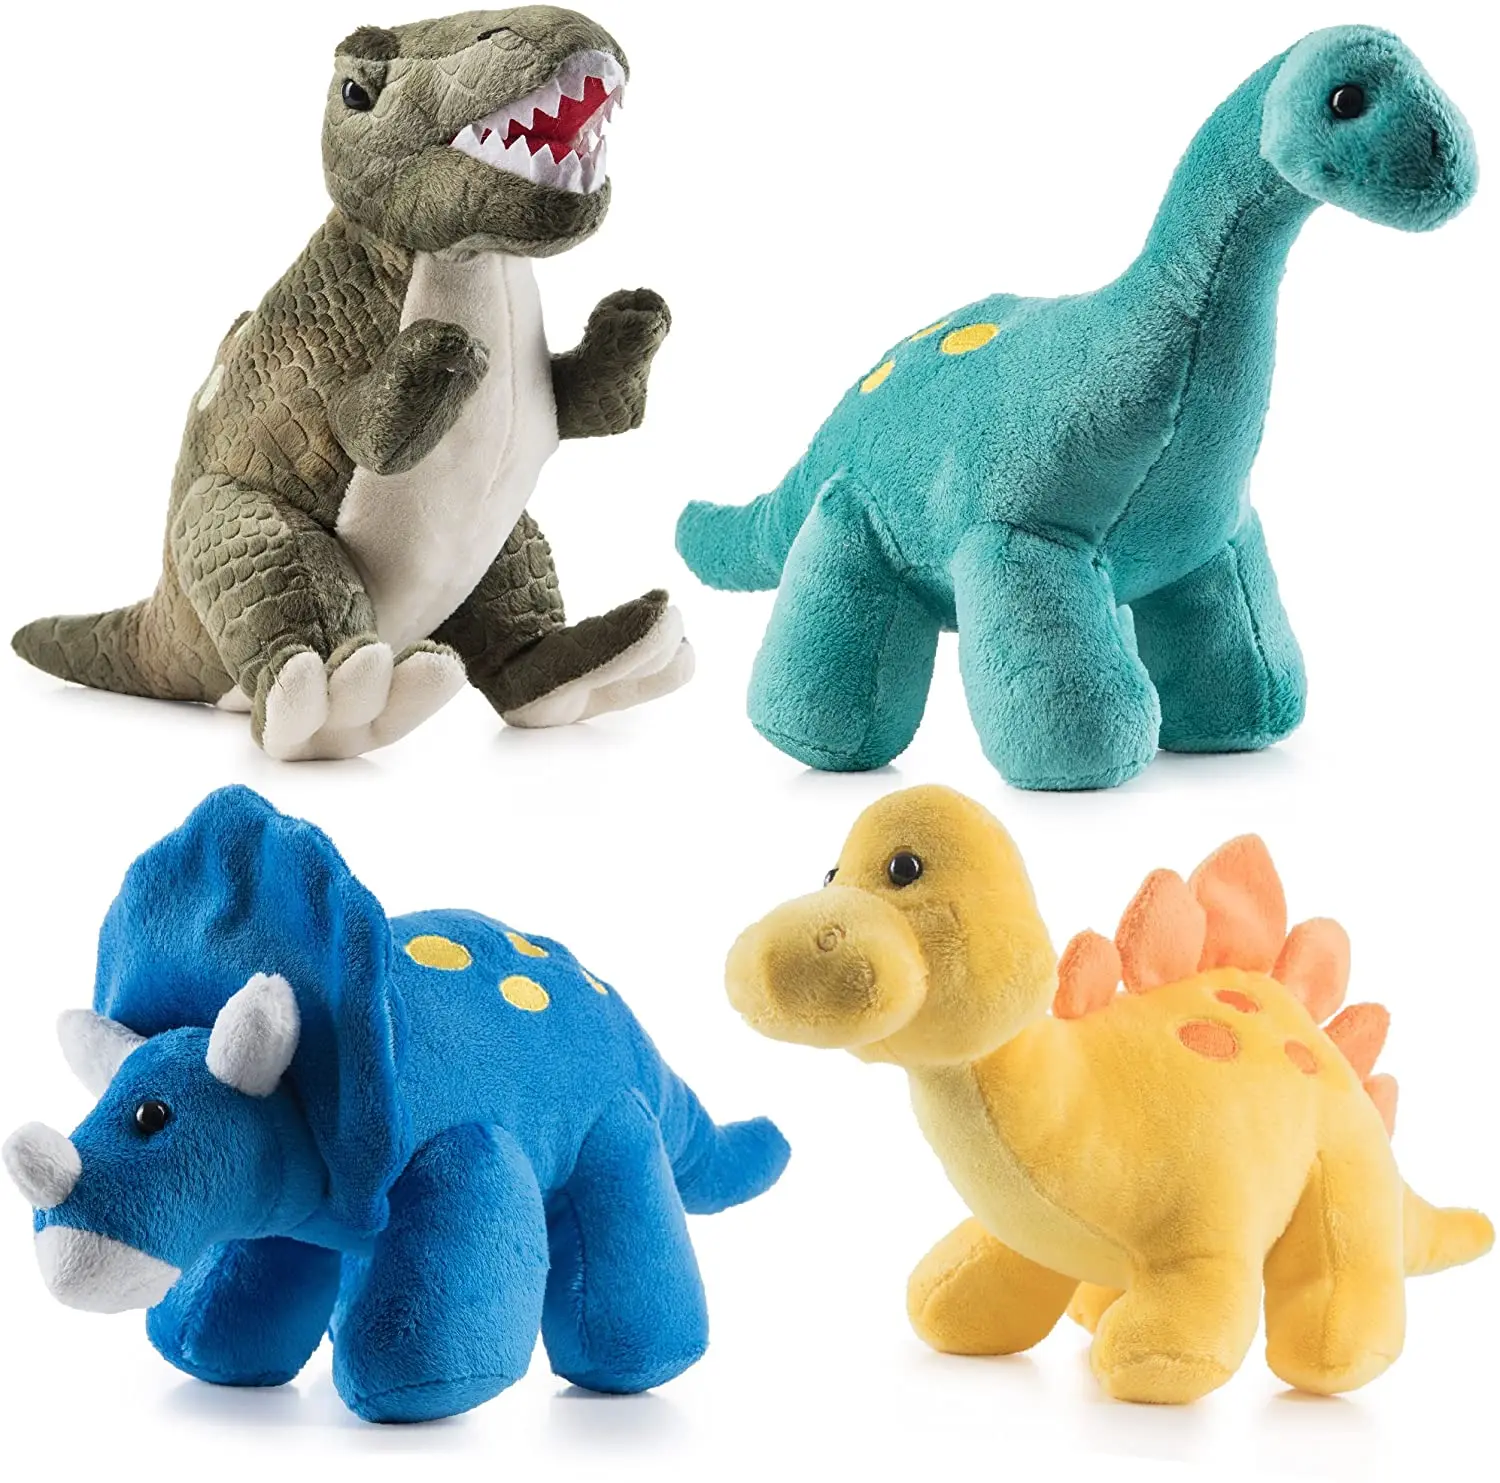 Где Можно Купить Хорошие Игрушки Динозавров